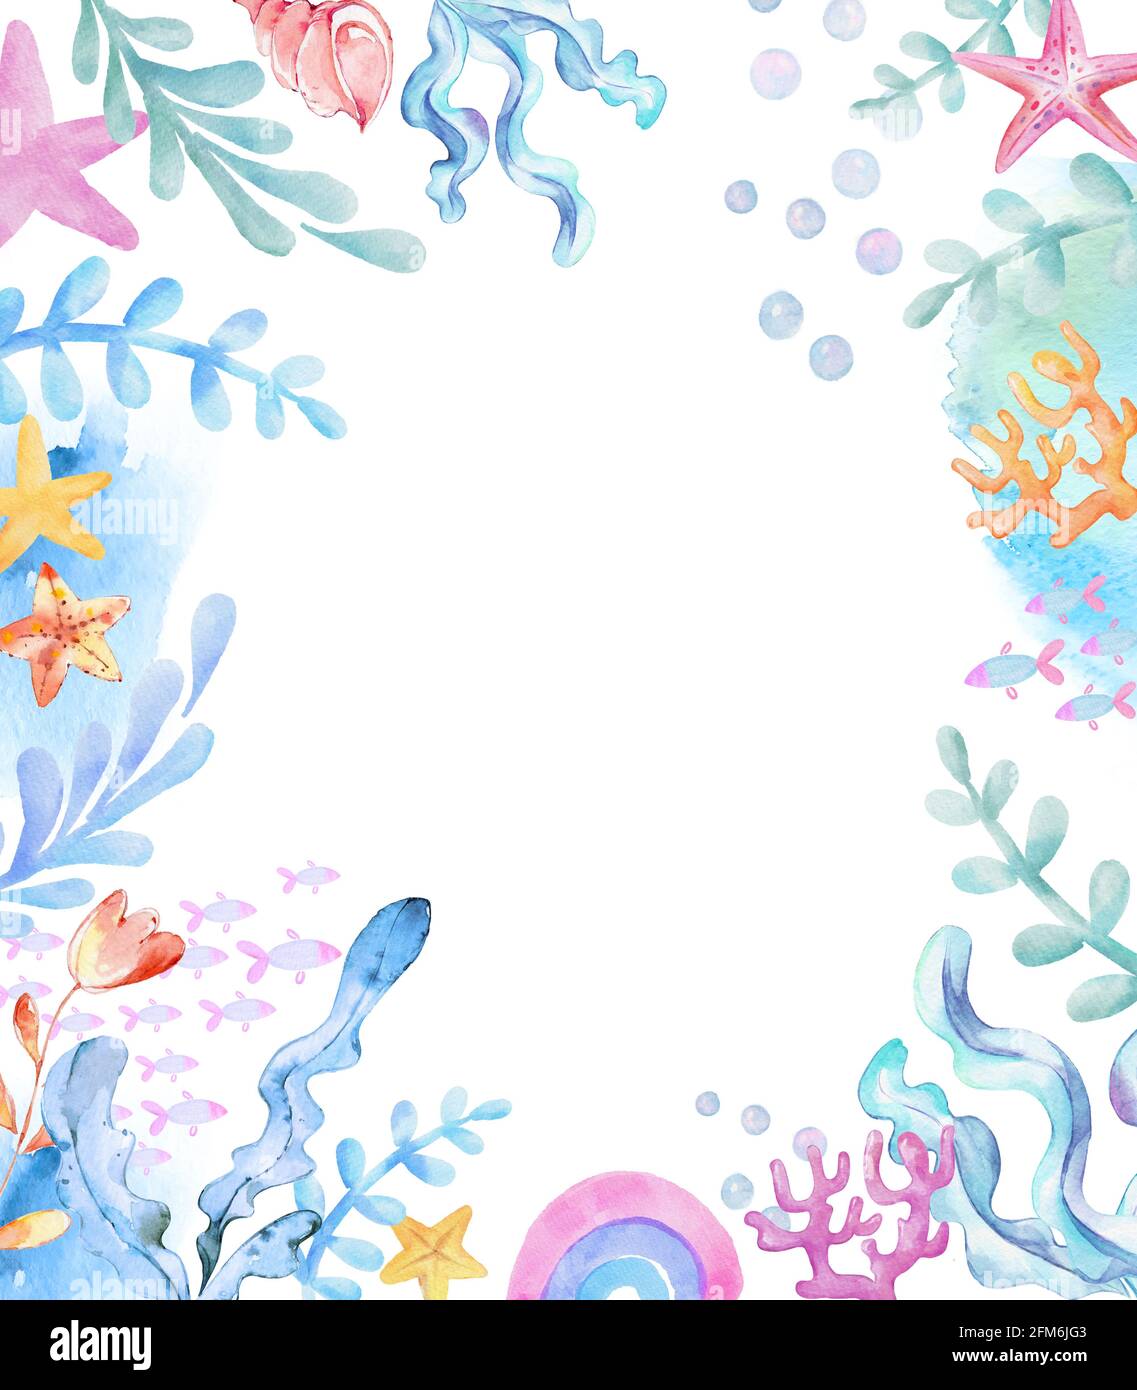 Acquerello subacqueo sfondo. Alghe, pesci. Coralli di stelle marine, arcobaleno, conchiglie elementi marini. Illustrazione di Cartoon per bambini Foto Stock